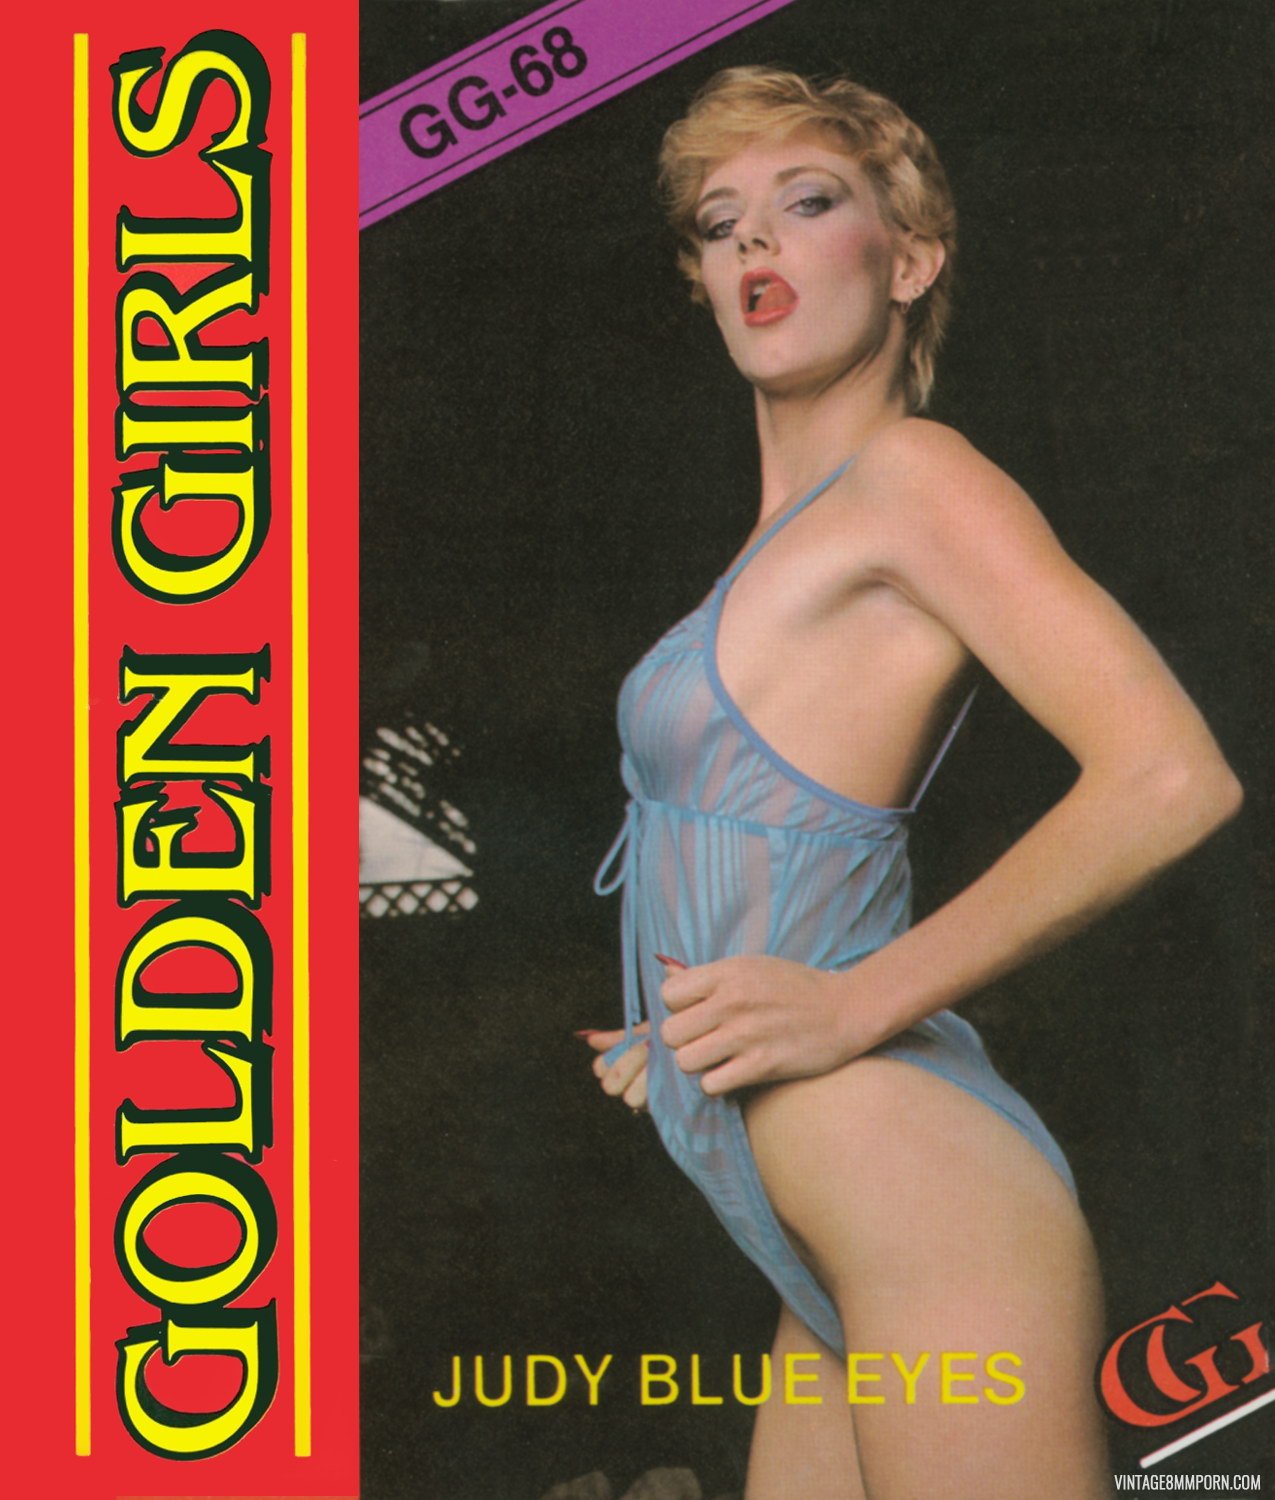 Golden Girls 68 - Judy Blue Eyes